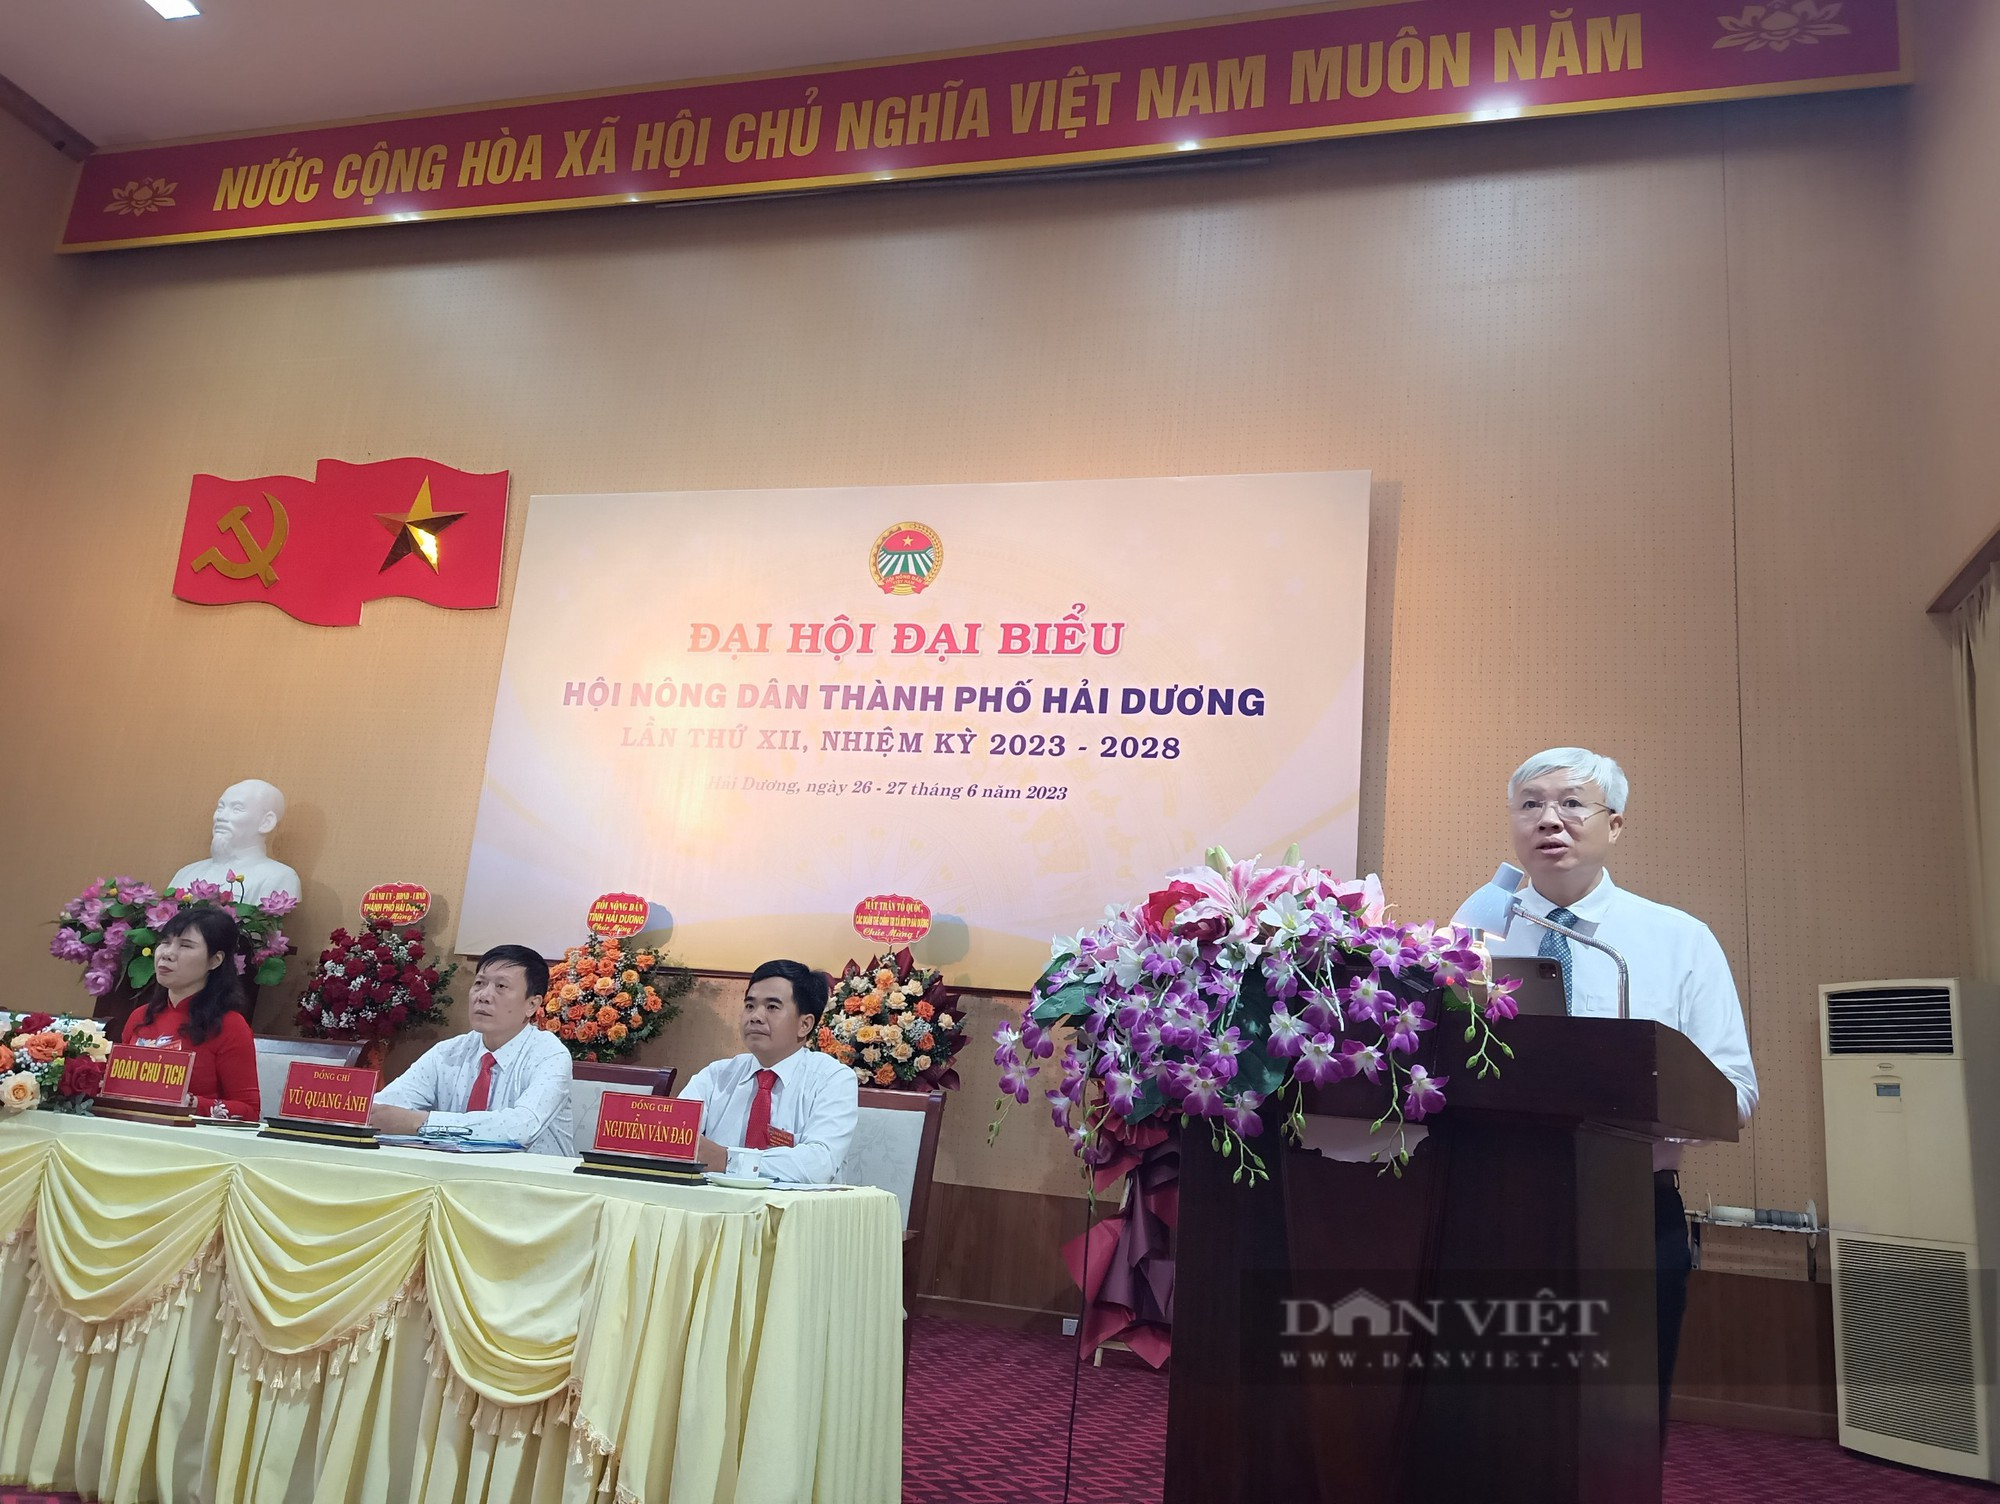 Đại hội Đại biểu Hội nông dân TP Hải Dương, bà Nguyễn Hải Yến tái đắc cử chức Chủ tịch - Ảnh 3.